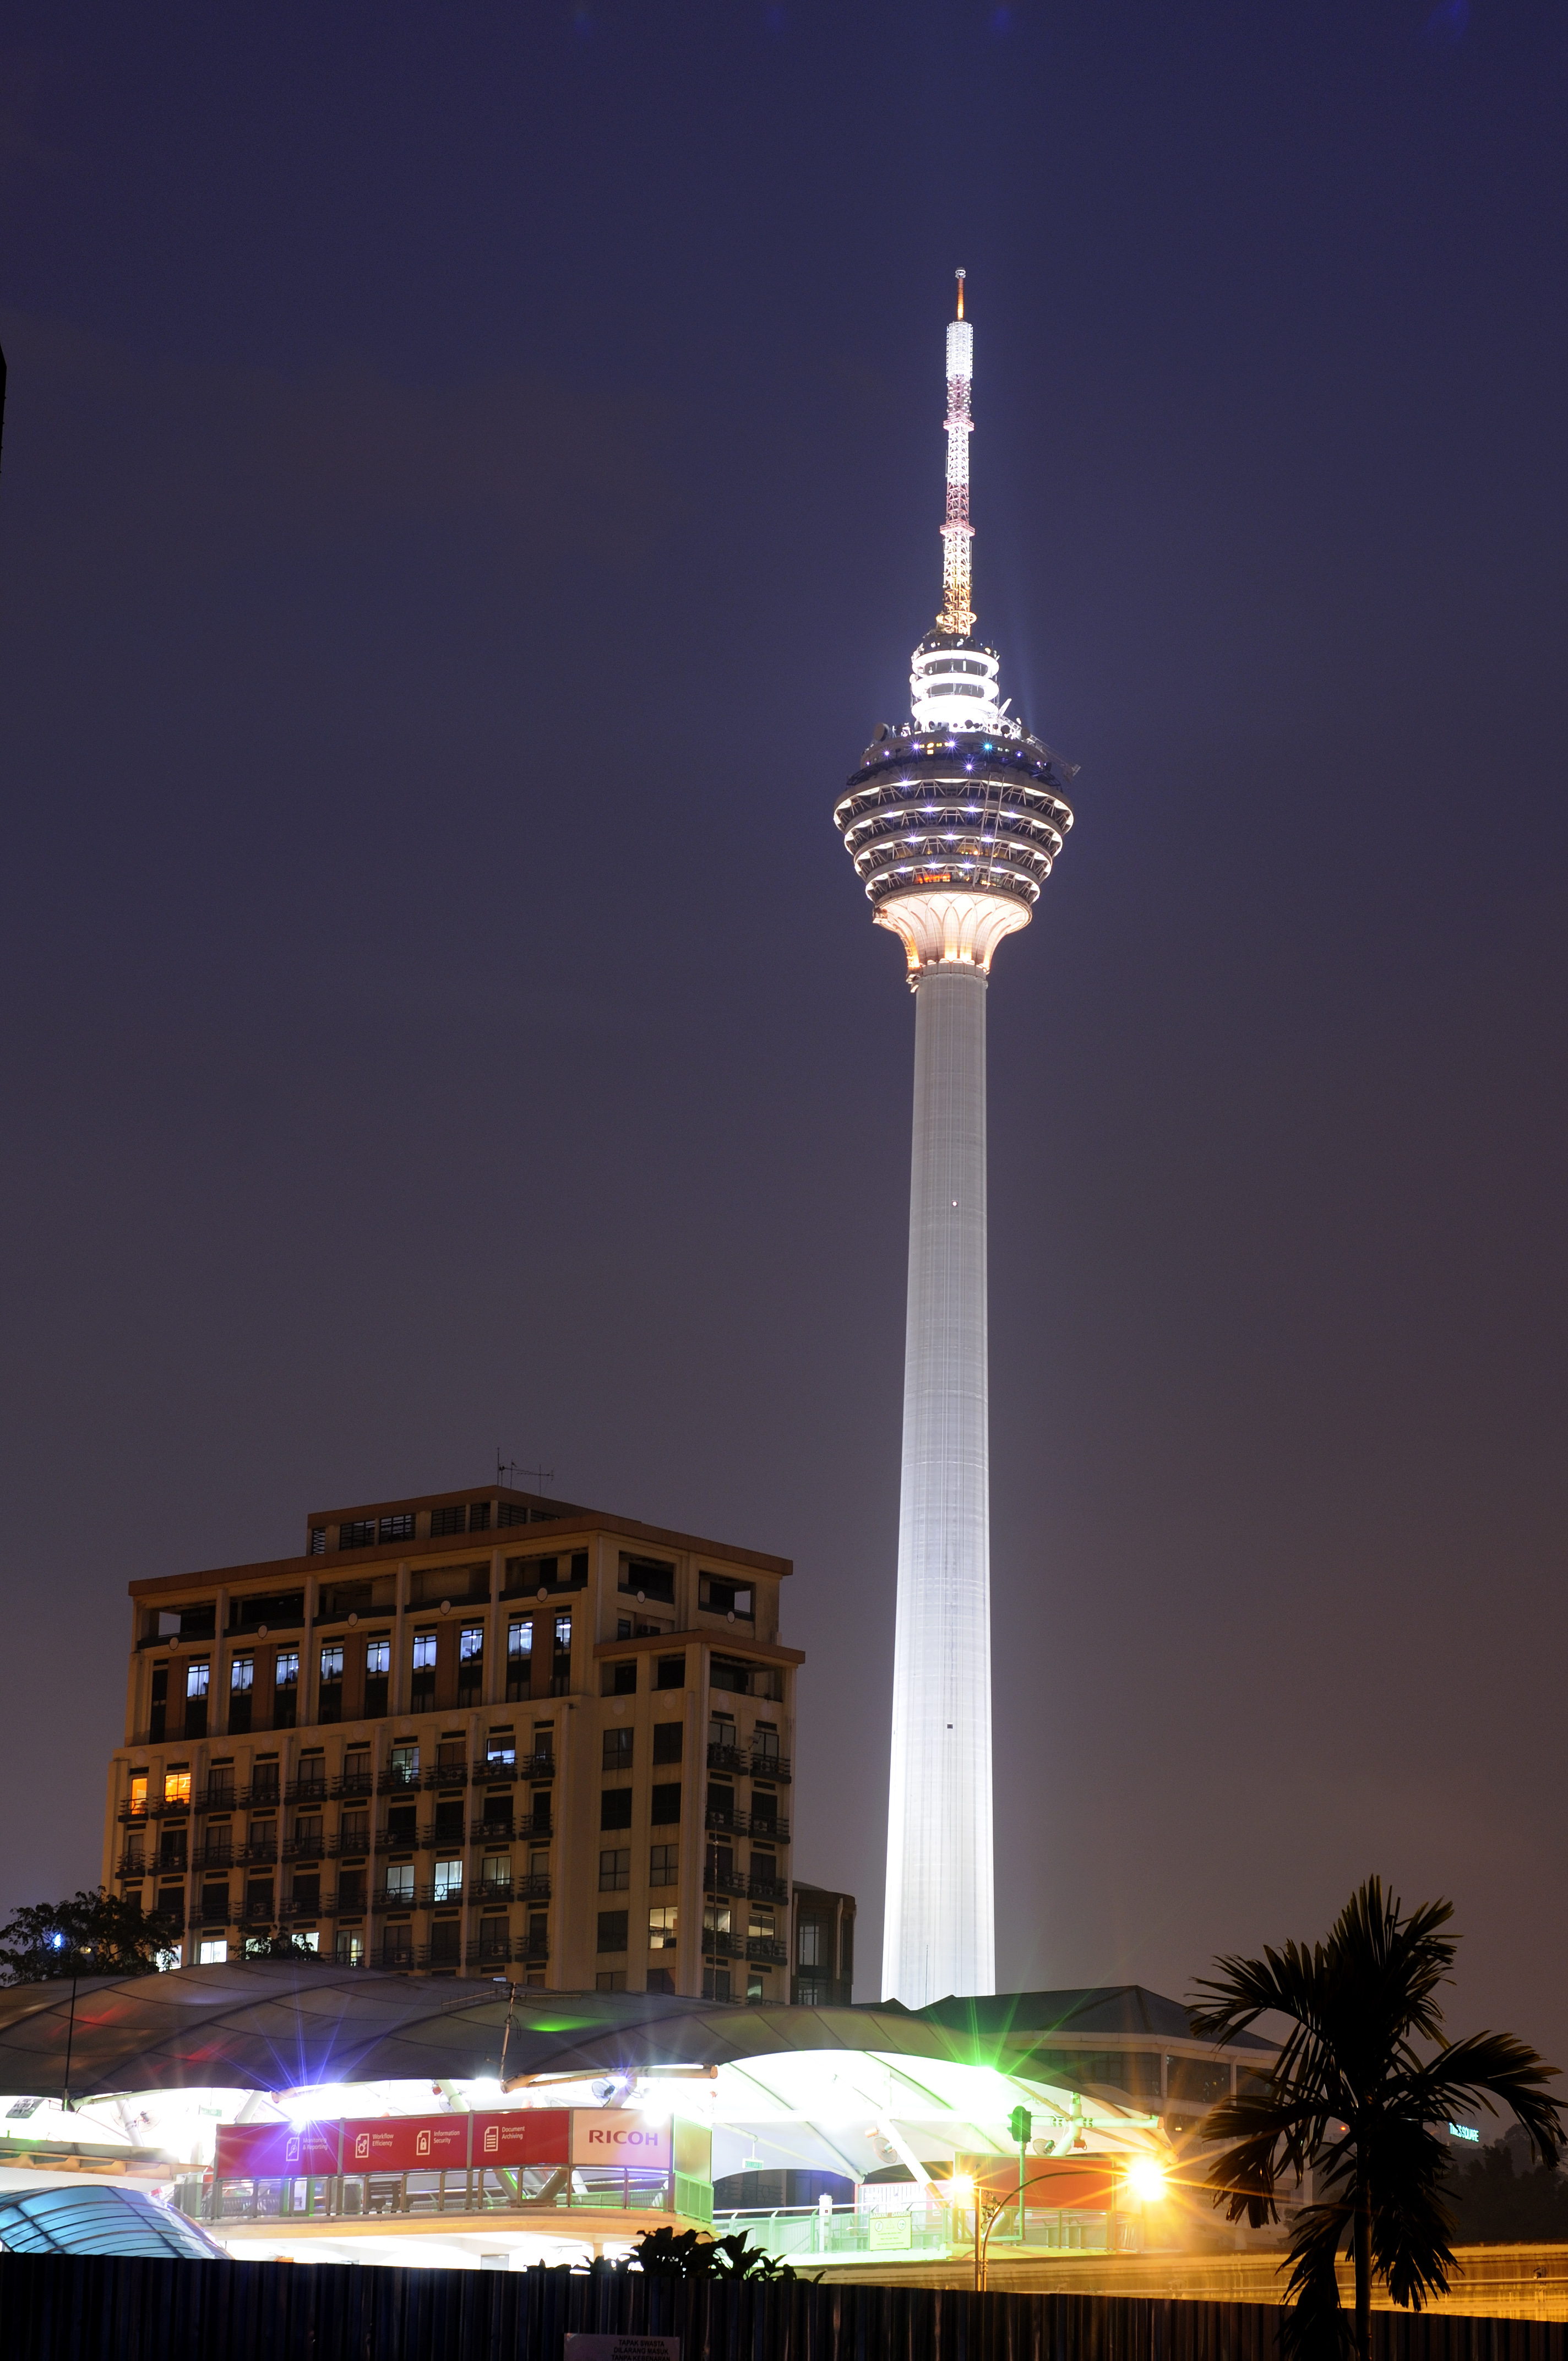 Menara Kuala Lumpur | Kuala Lumpur, Malaysia Attractions - Lonely Planet